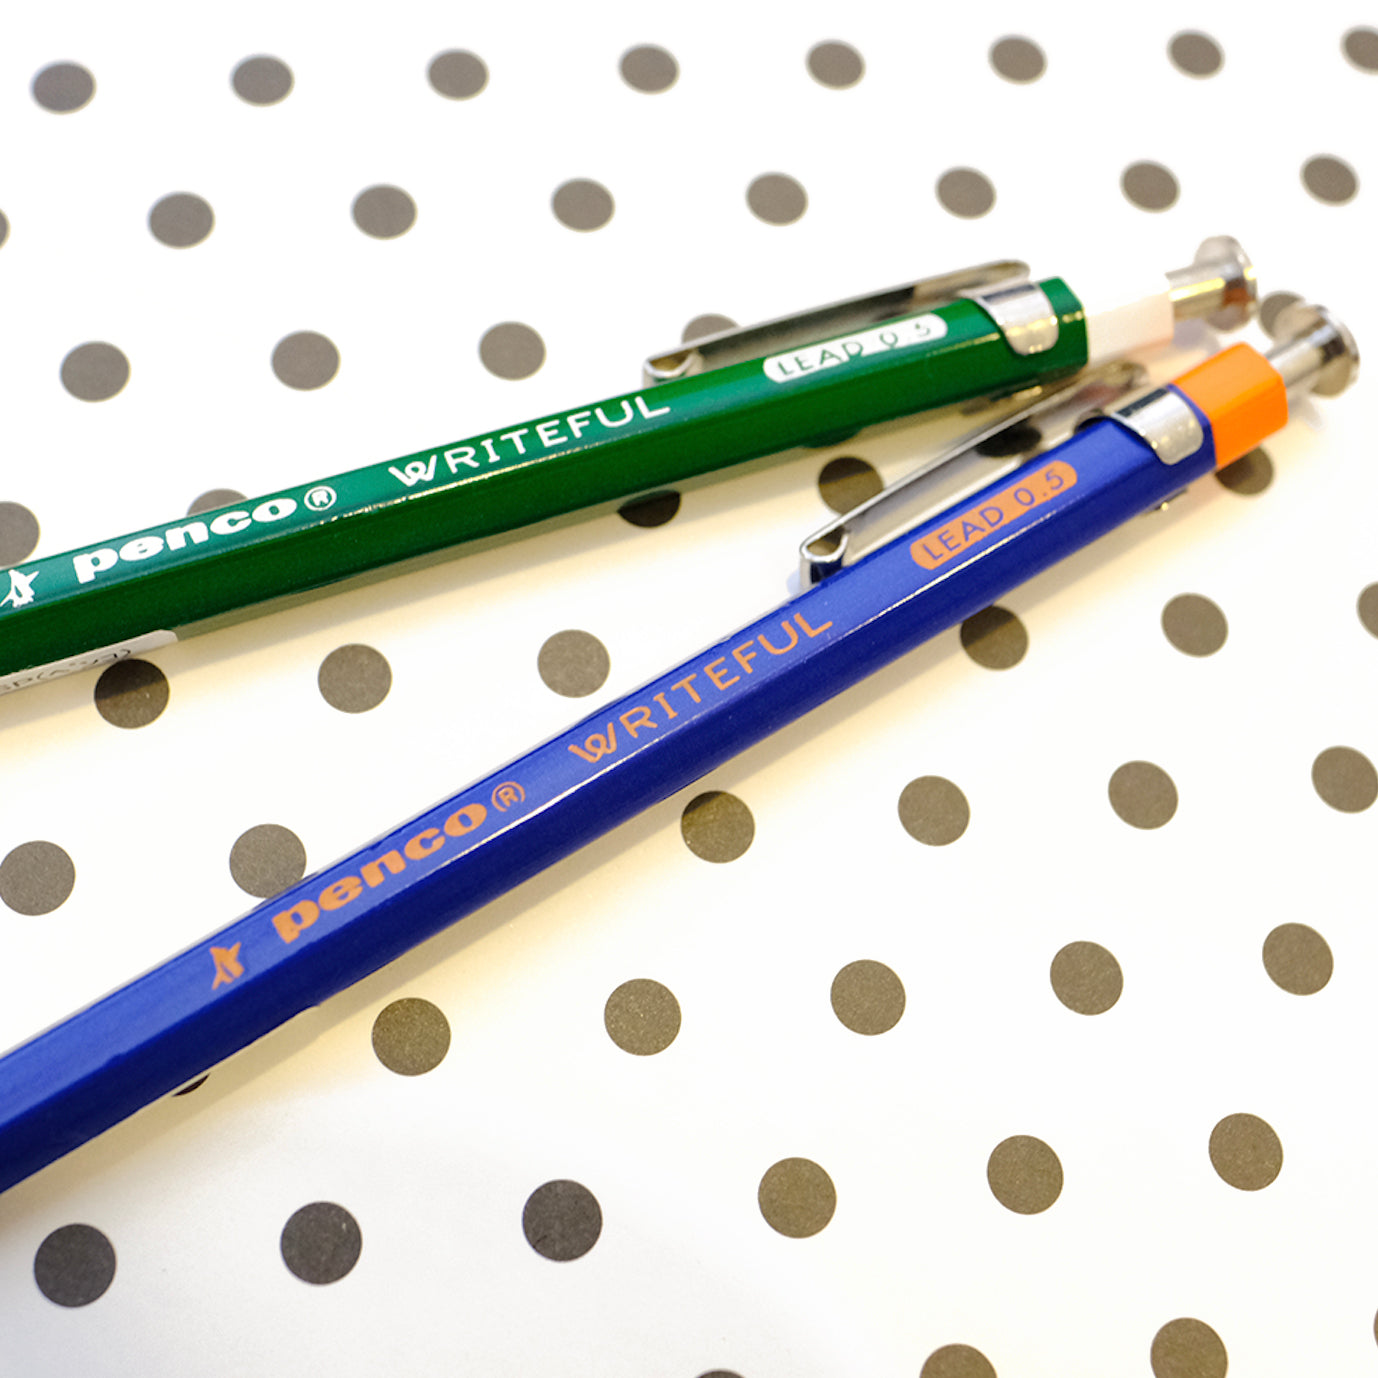 Writeful mechanical pencil 0.5 mm - Summer Made